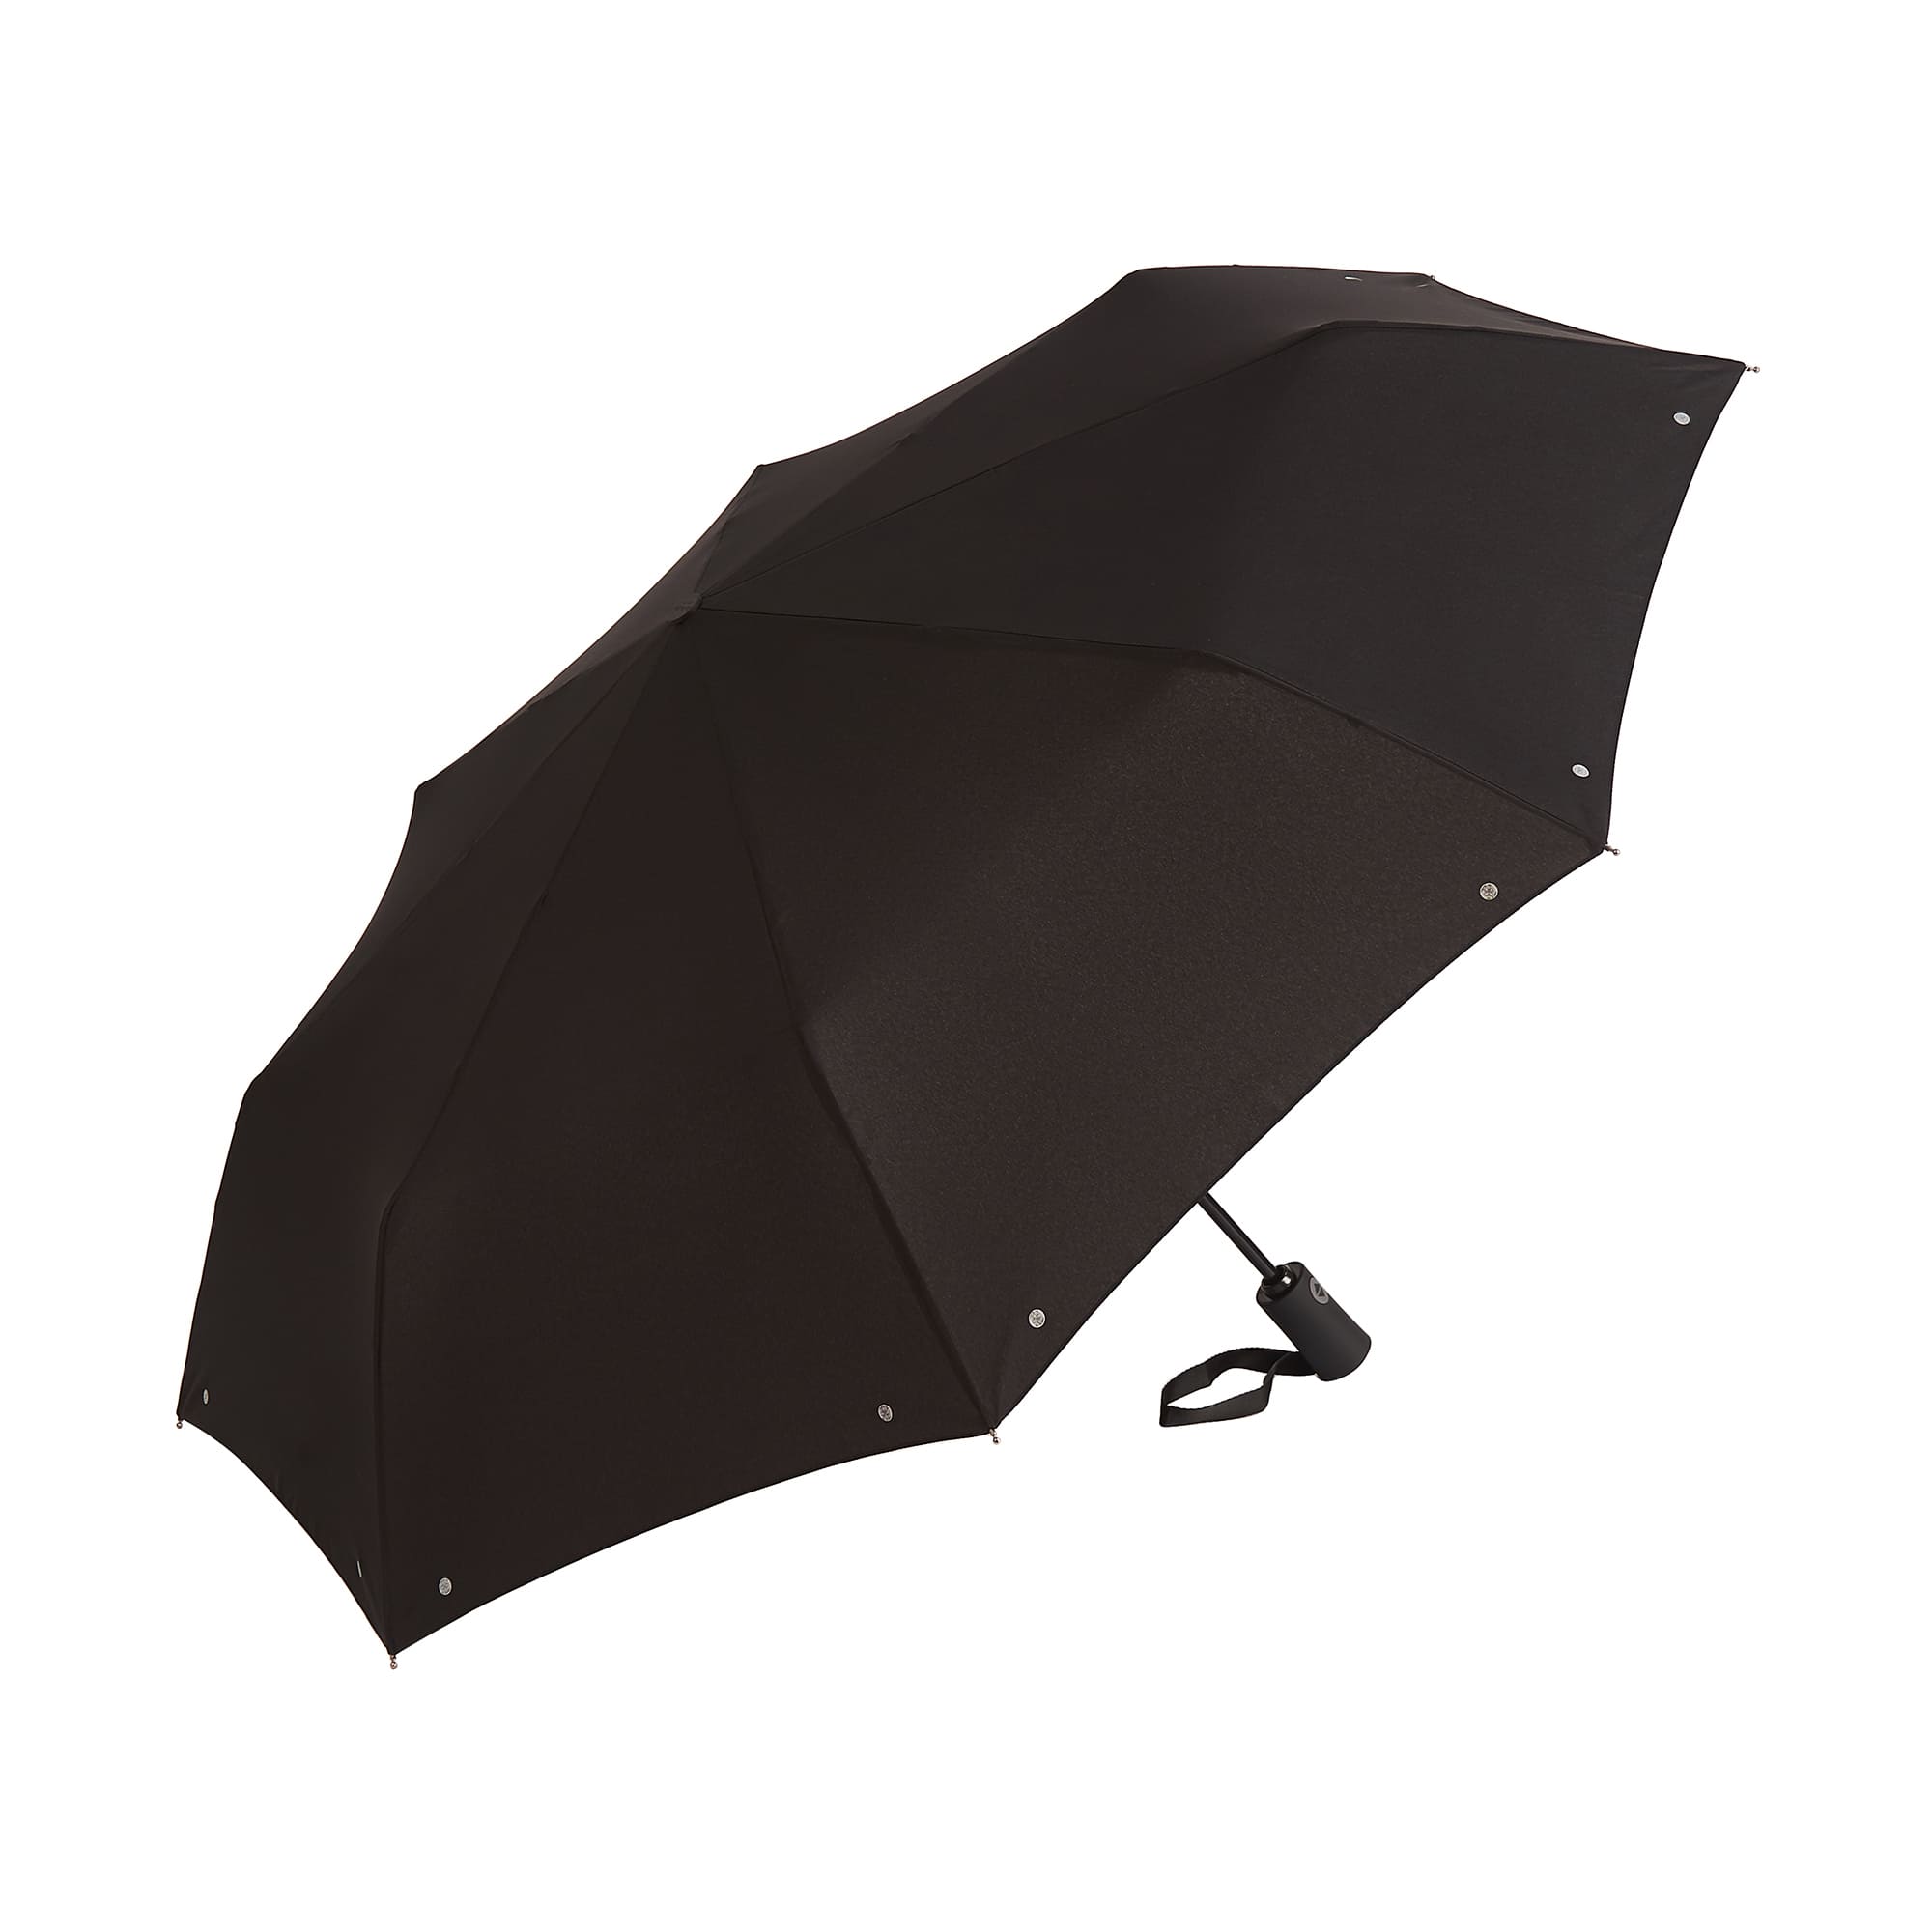 Др.Коффер E422 зонт, цвет черный